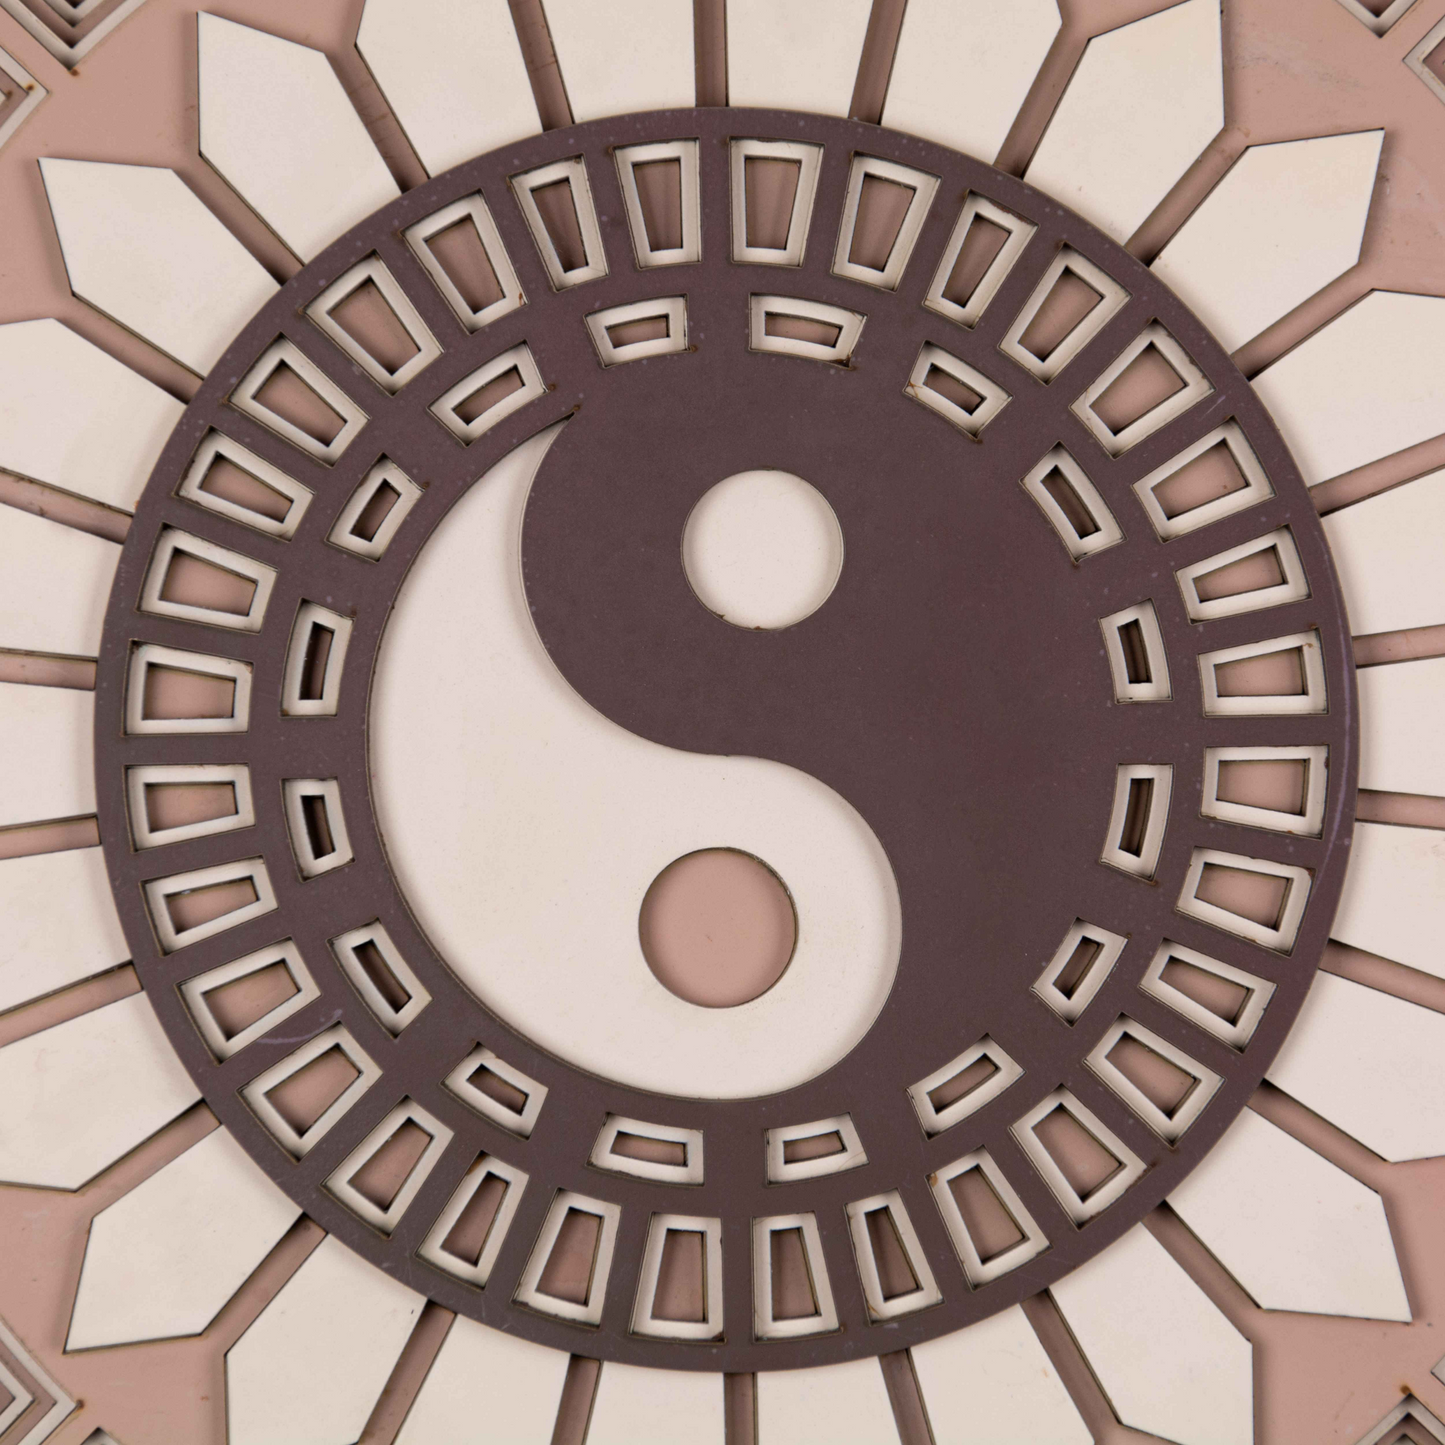 Yin-Yang Multi Layer Mandala